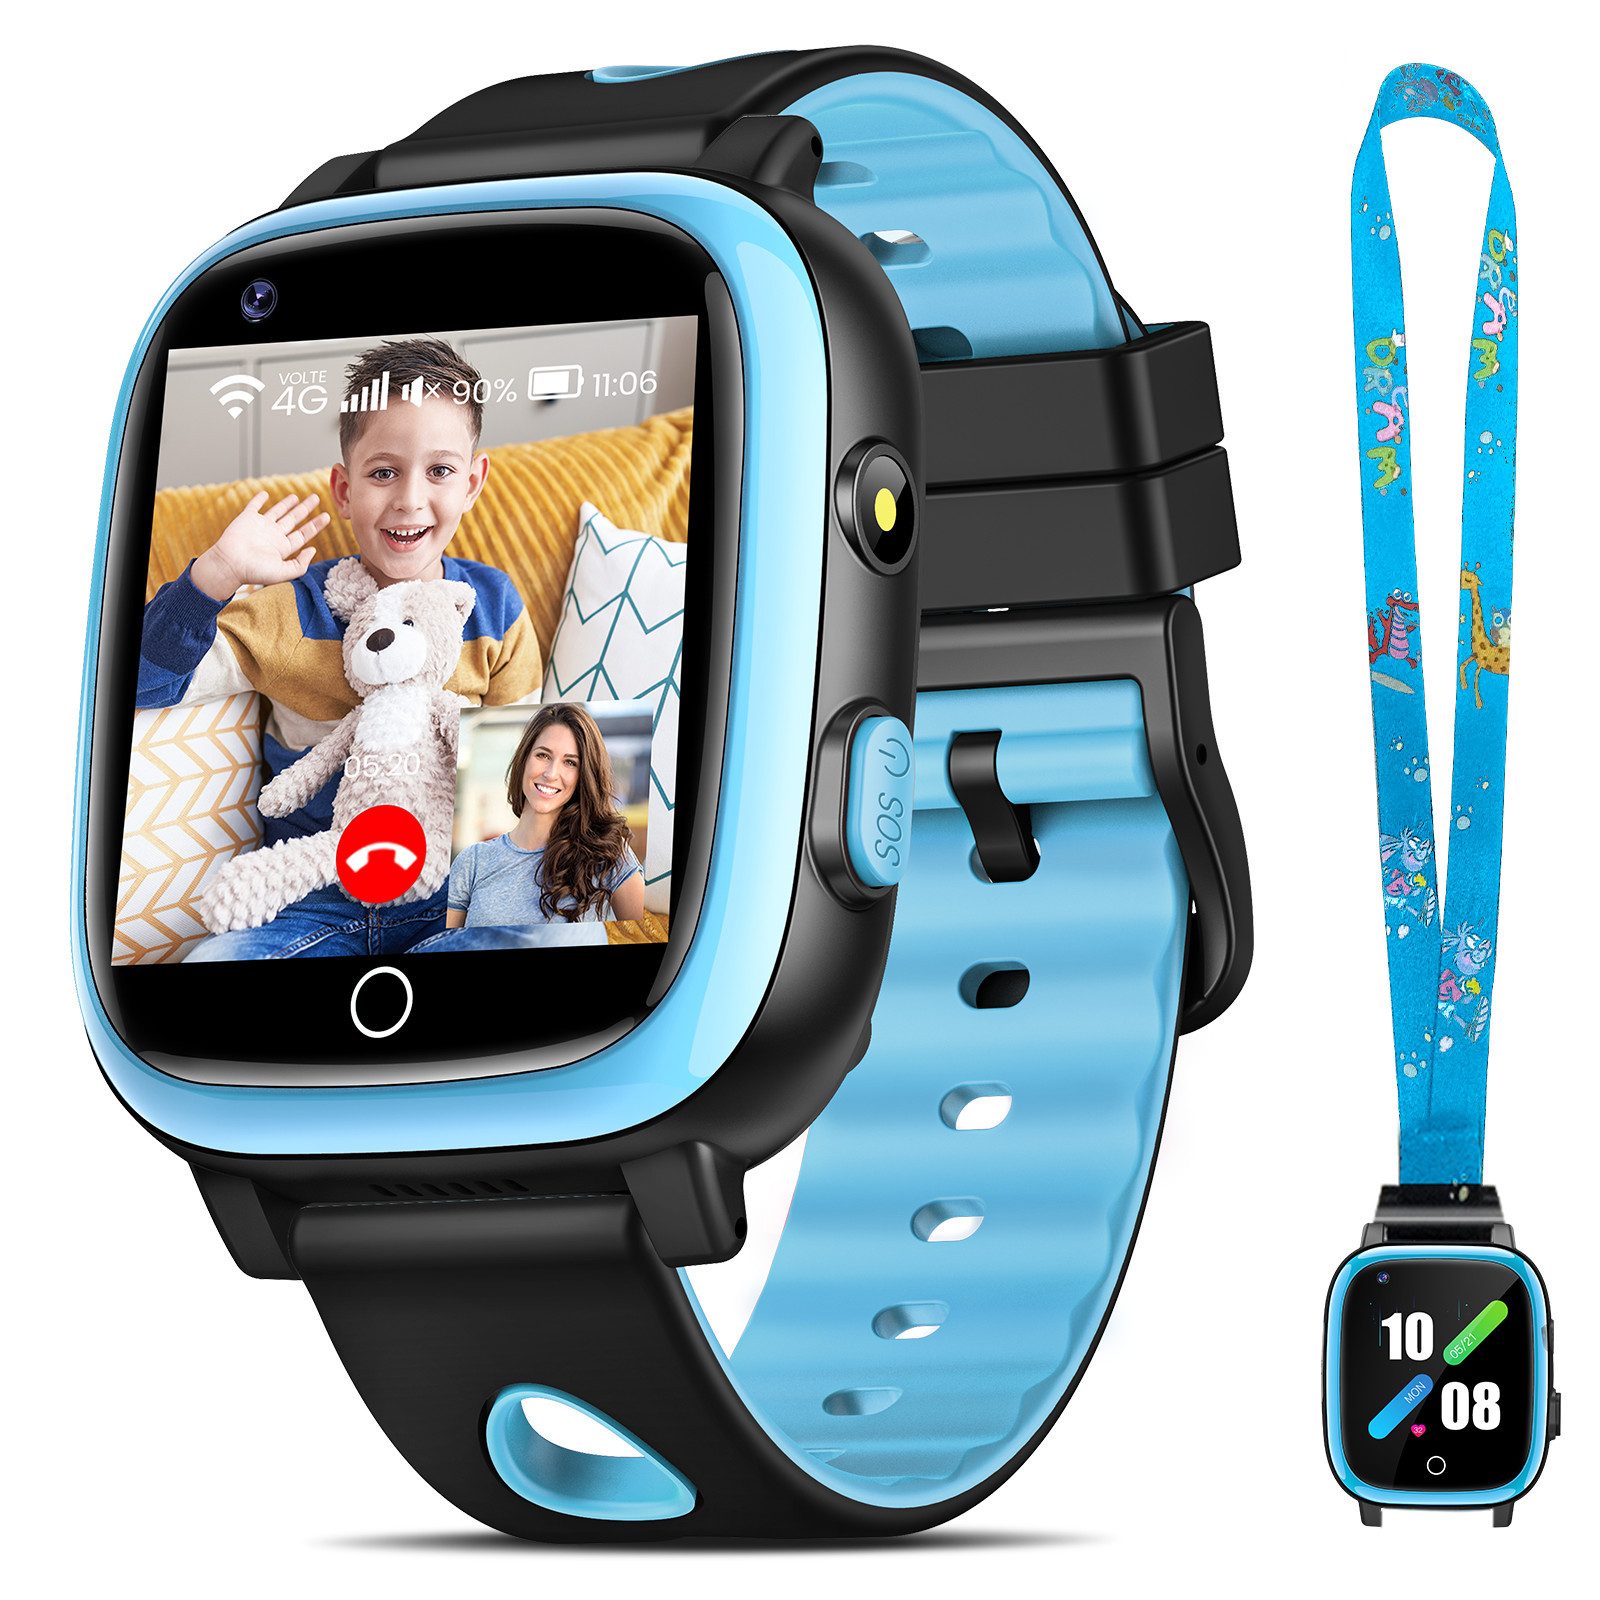 Sanorum 4G Smartwatch kinder mit GPS und Telefonfunktion Smartwatch (3.3 cm/1,3 Zoll, HD Voll Touchscreen) IP68 Kinder Smartwatch, mit Videoanrufen, SOS, WiFi, Musik, Wecker, Schulmodus, Geschenke für Jungen Mädchen, mit Halsseil